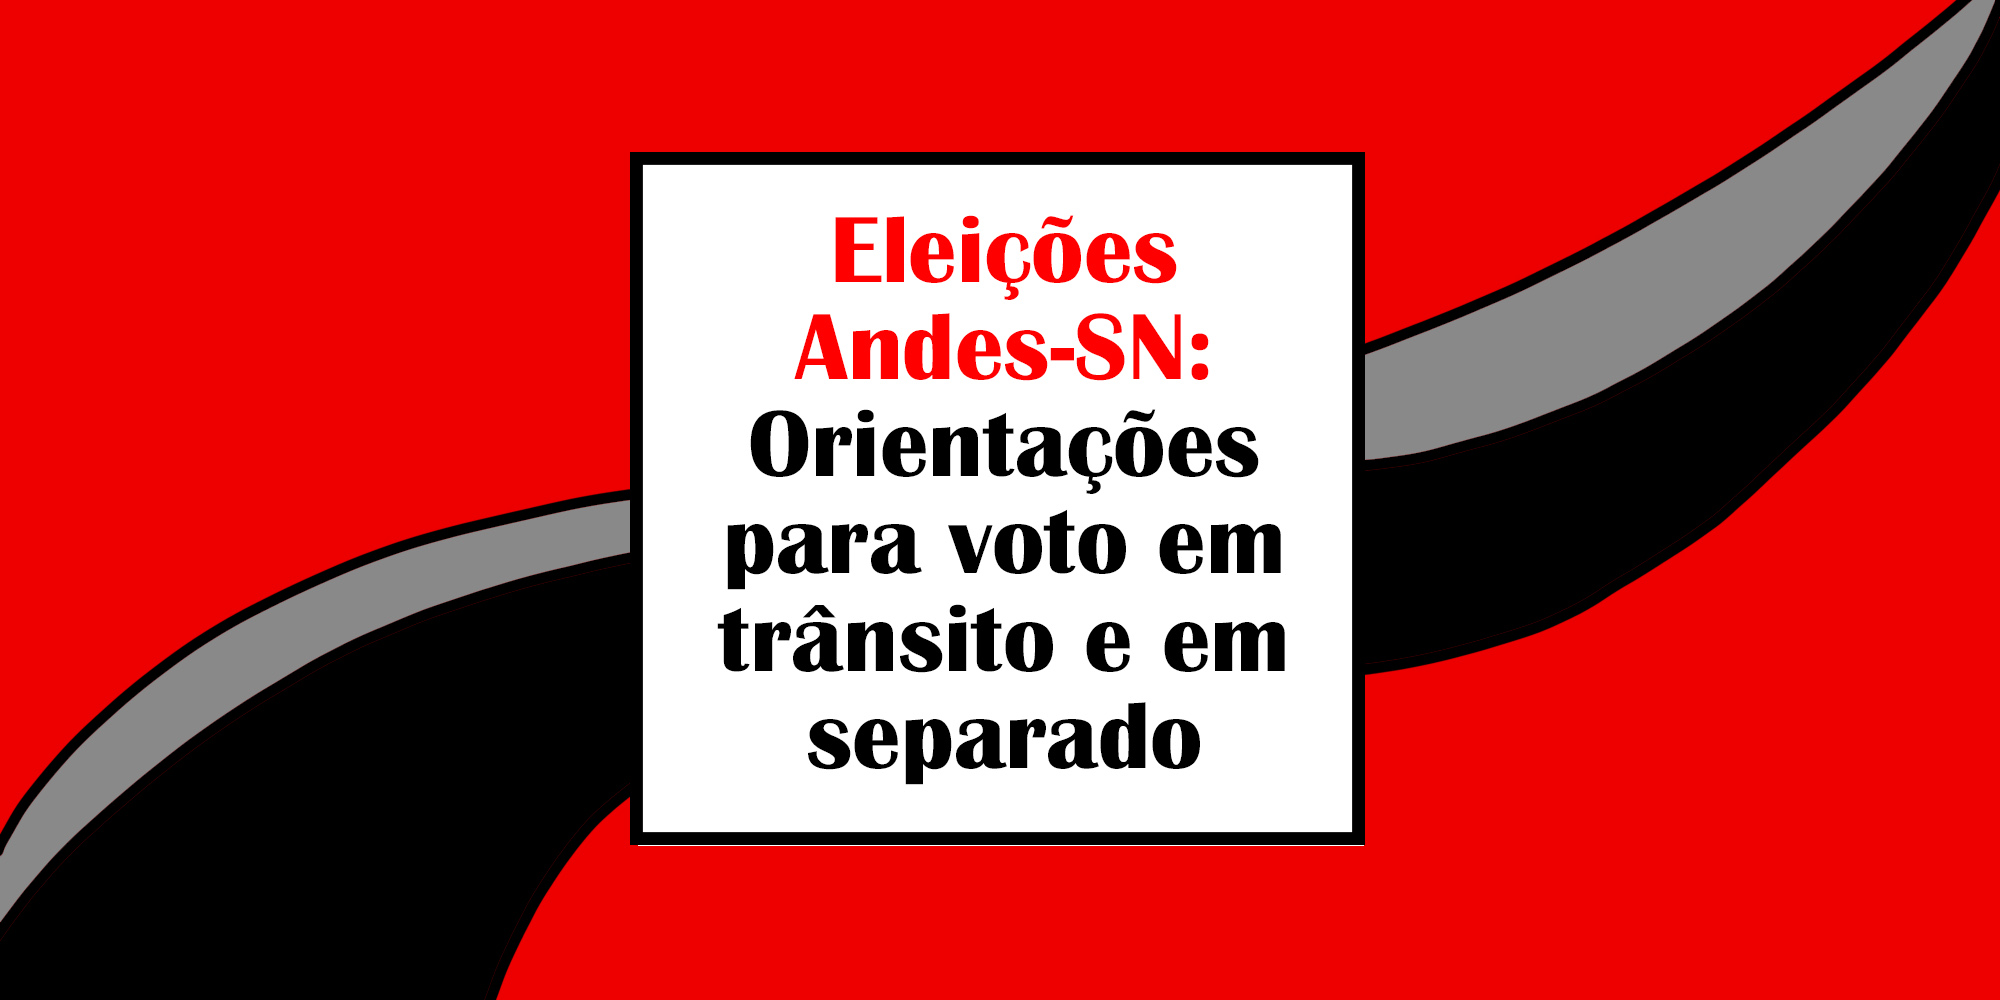 Eleição Andes-SN: Confira orientações para voto em trânsito e em separado